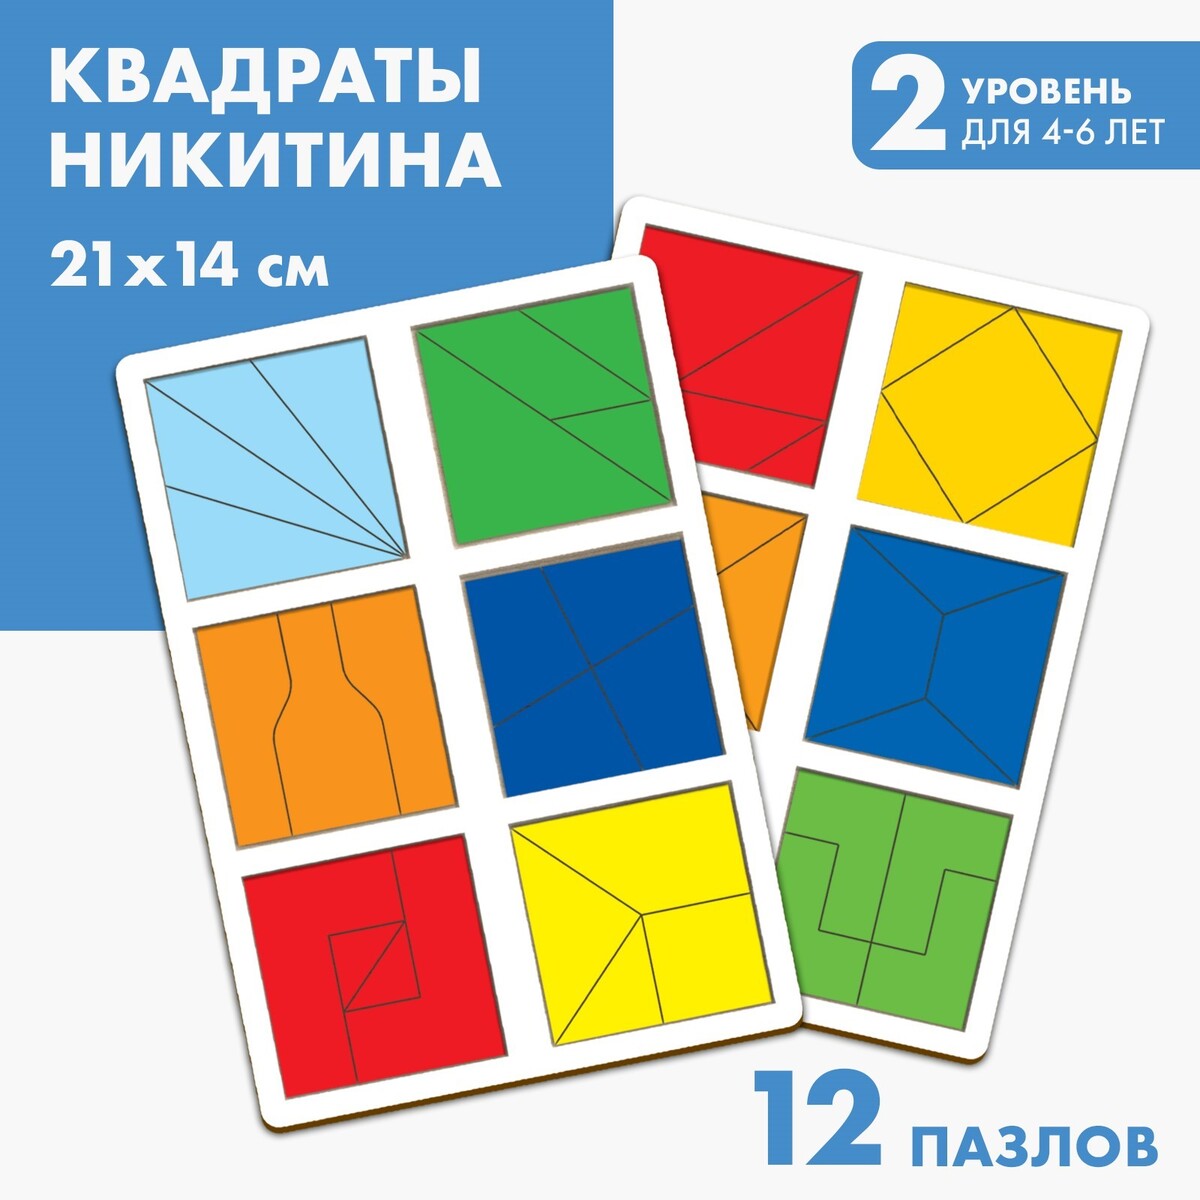 Квадраты никитина 2 уровень (2 шт.), 12 квадратов